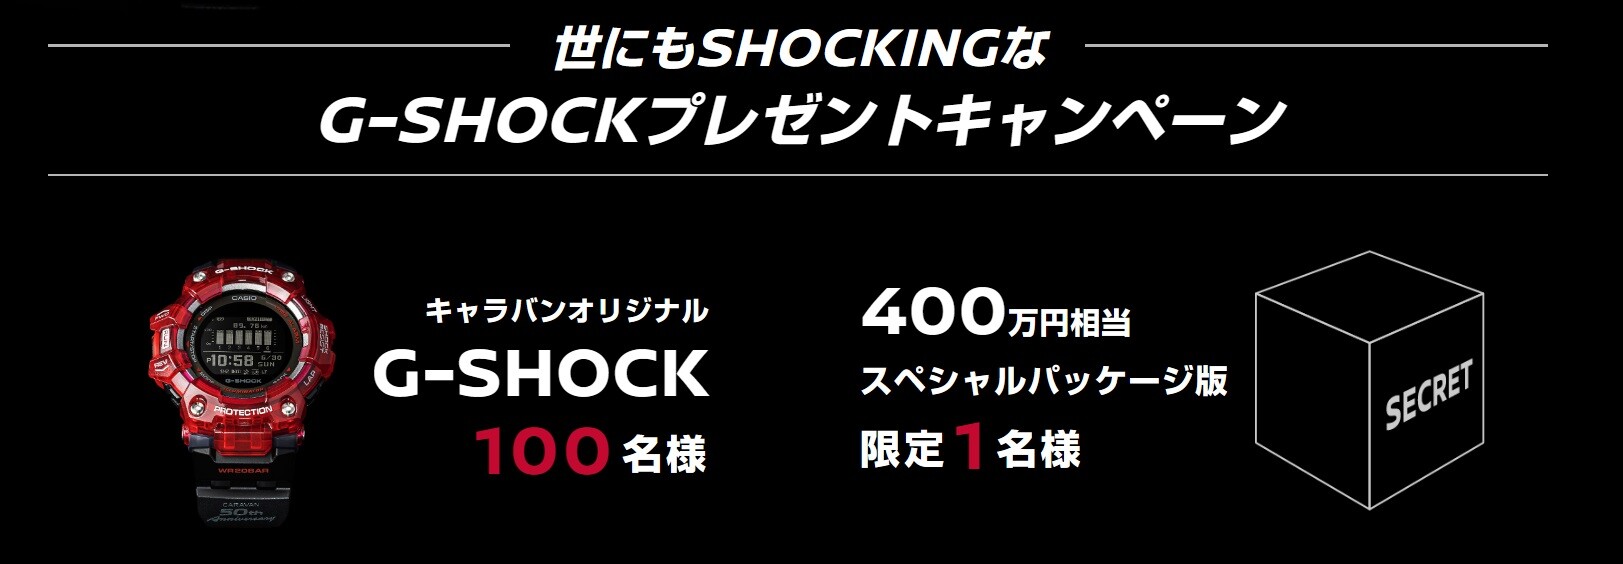 世にもshockingなG-SHOCKプレゼントキャンペーン G-SHOCK smcint.com